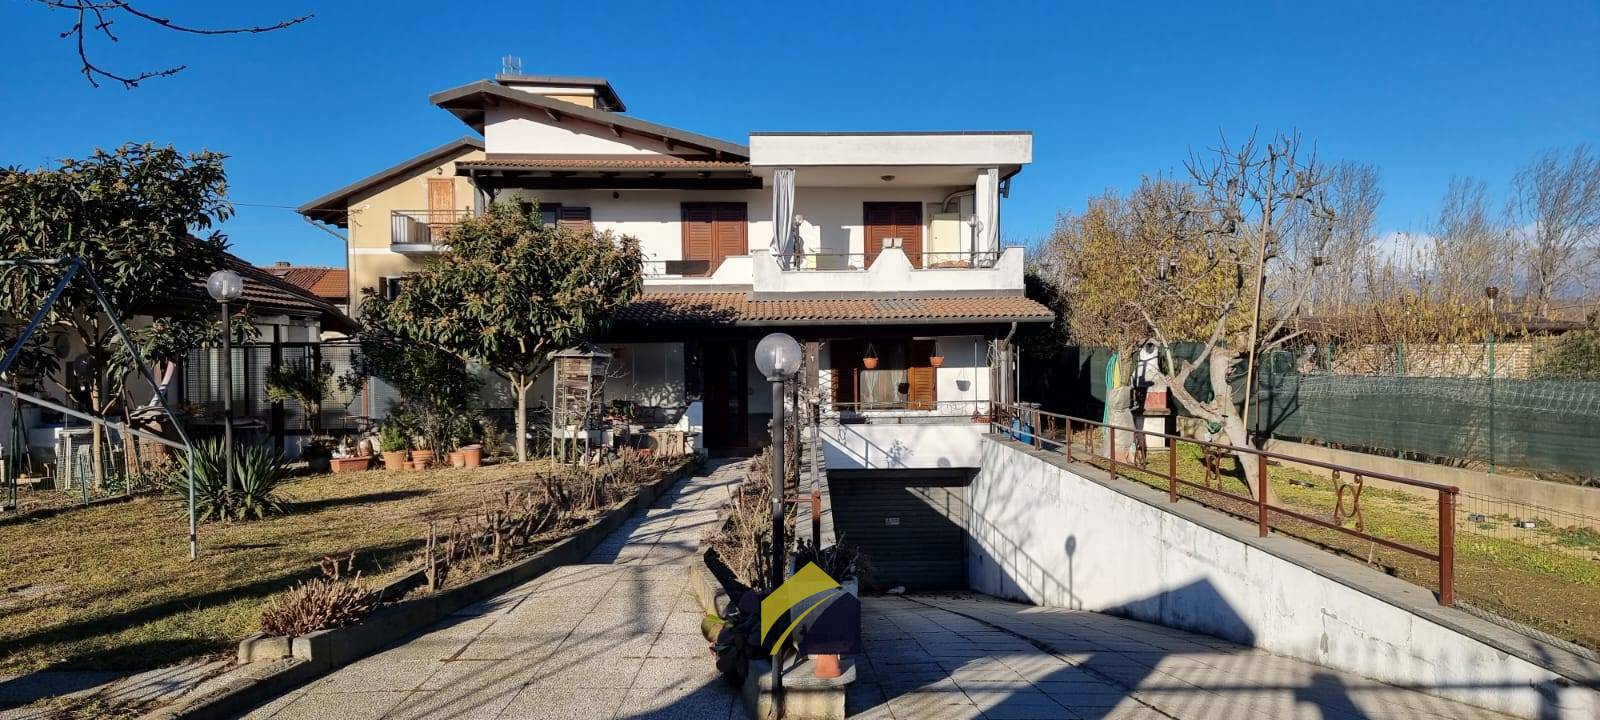 Appartamento in affitto a Rivalta di Torino, 4 locali, zona Località: Gerbole, prezzo € 500 | PortaleAgenzieImmobiliari.it